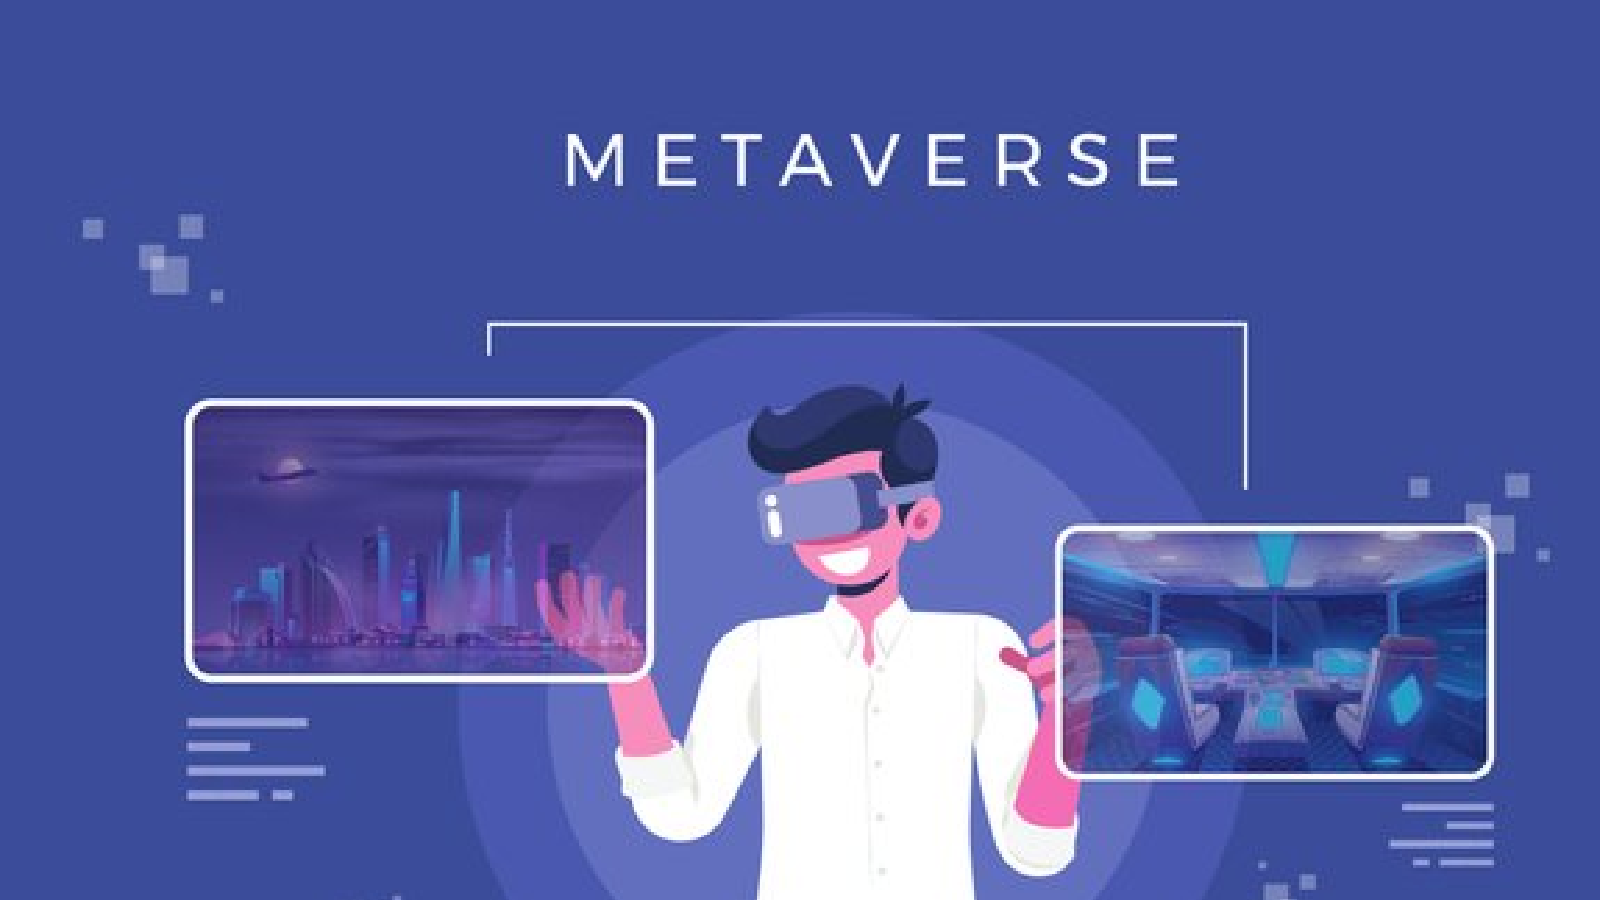 Metaverse platforms